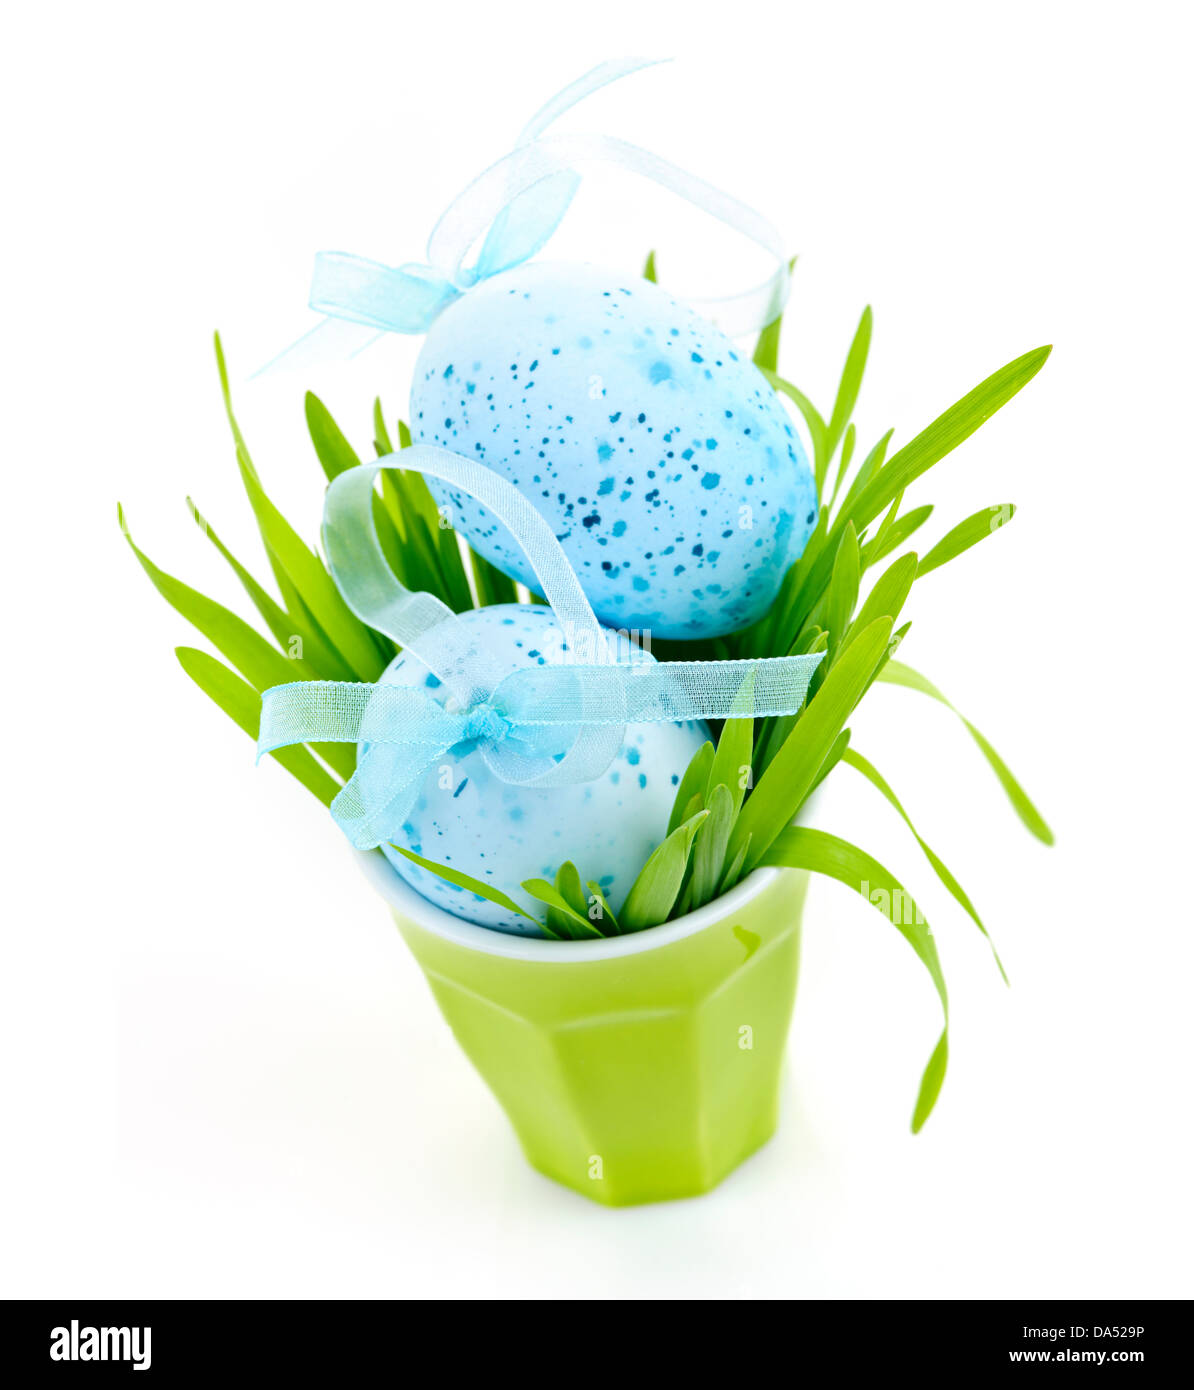 Les oeufs de Pâques bleu disposés en tasse avec de l'herbe verte isolated on white Banque D'Images